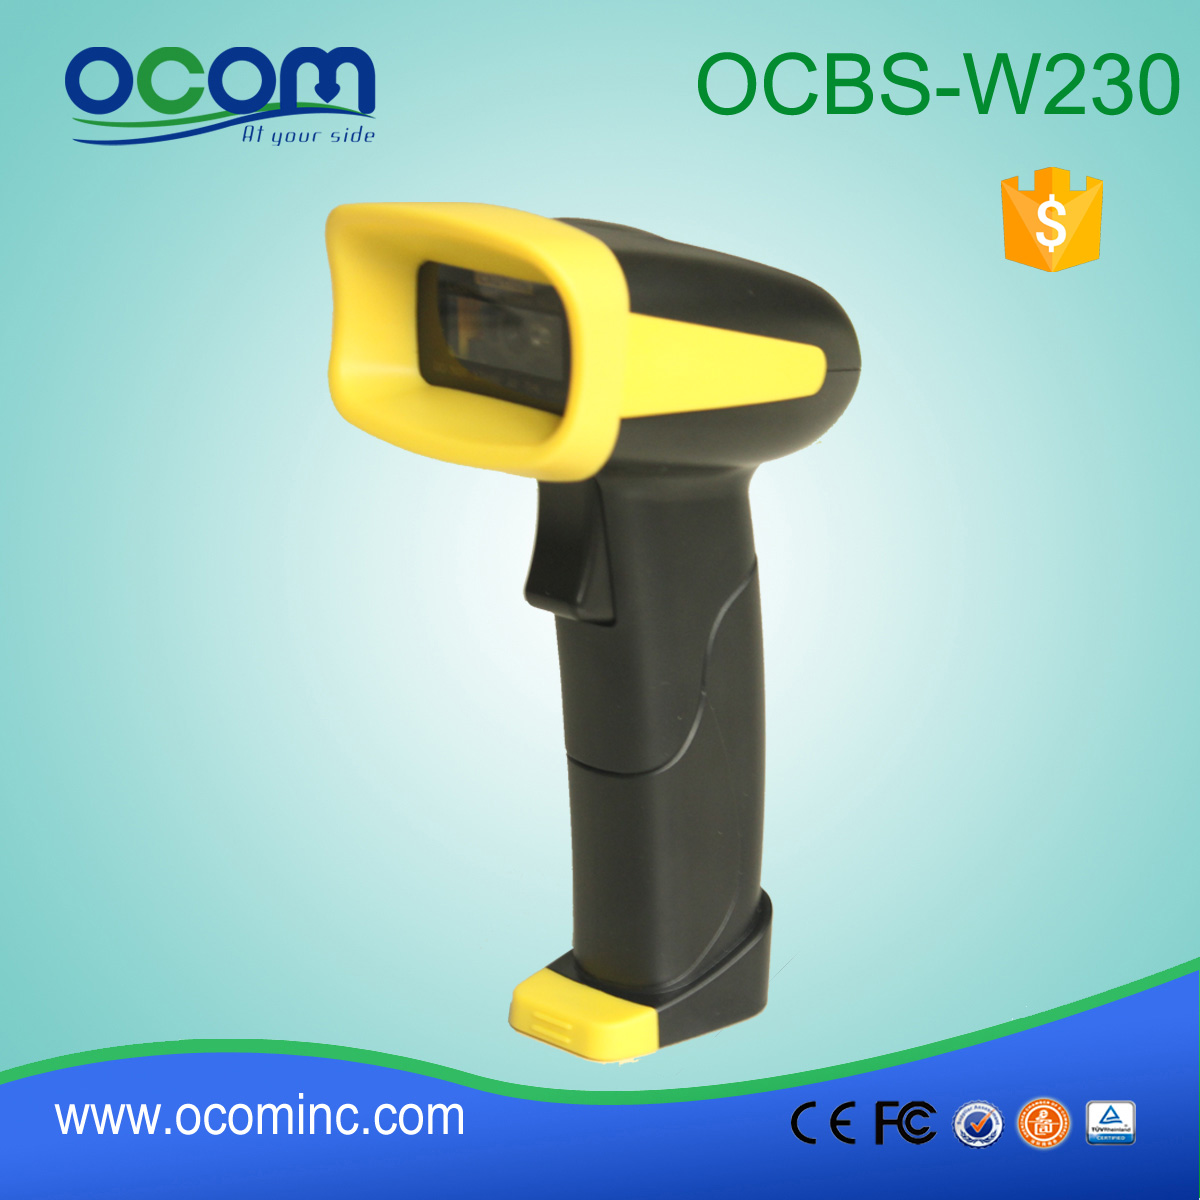 OCBS-W230 ασύρματο σαρωτή barcode για μικροκατασκευές super usb micro usb mini android bluetooth